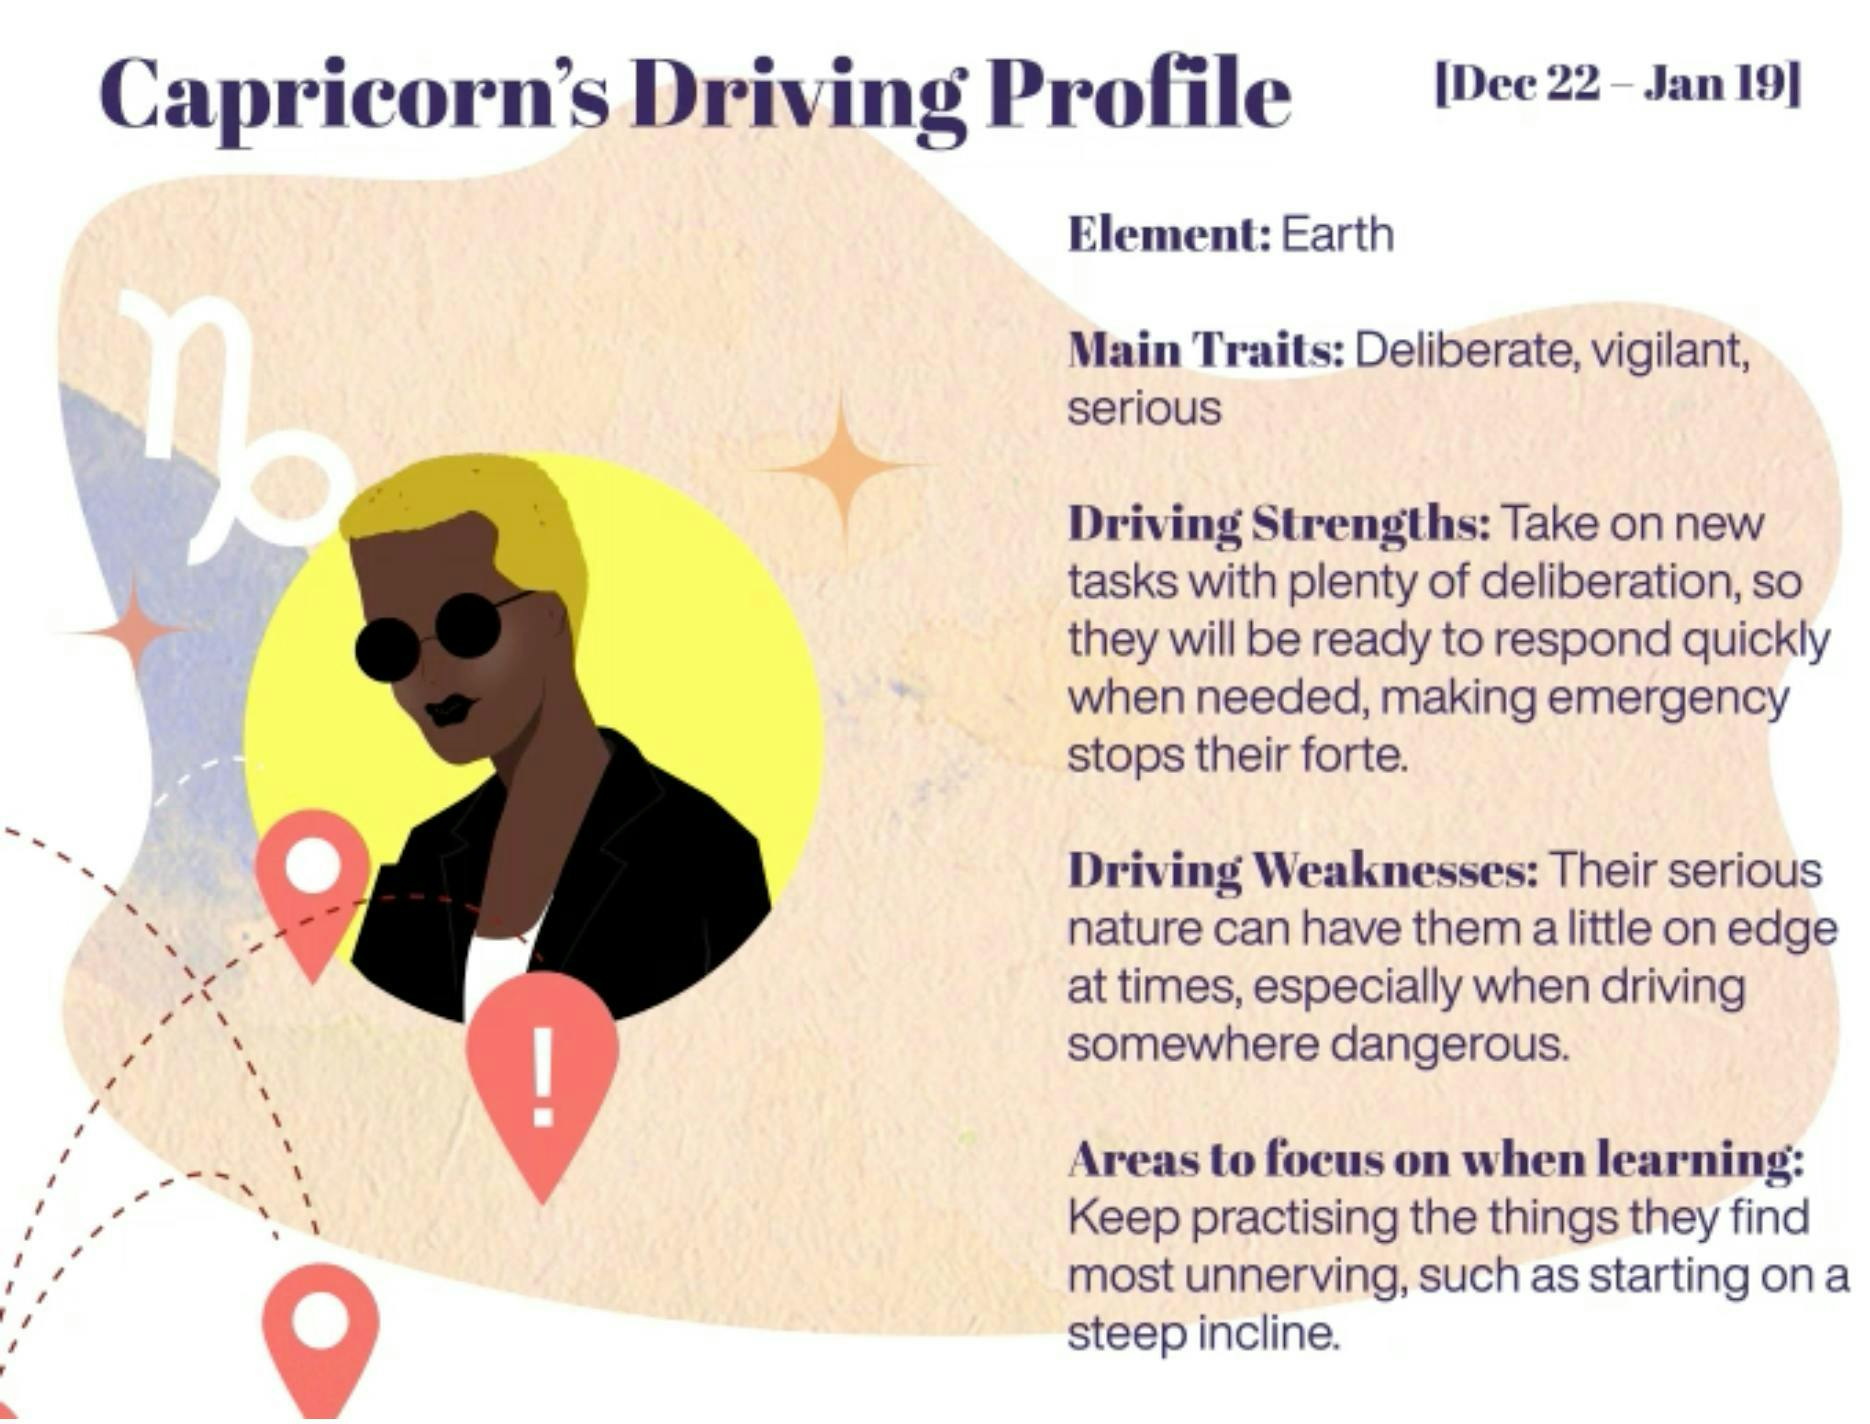 Capricorn driving profile